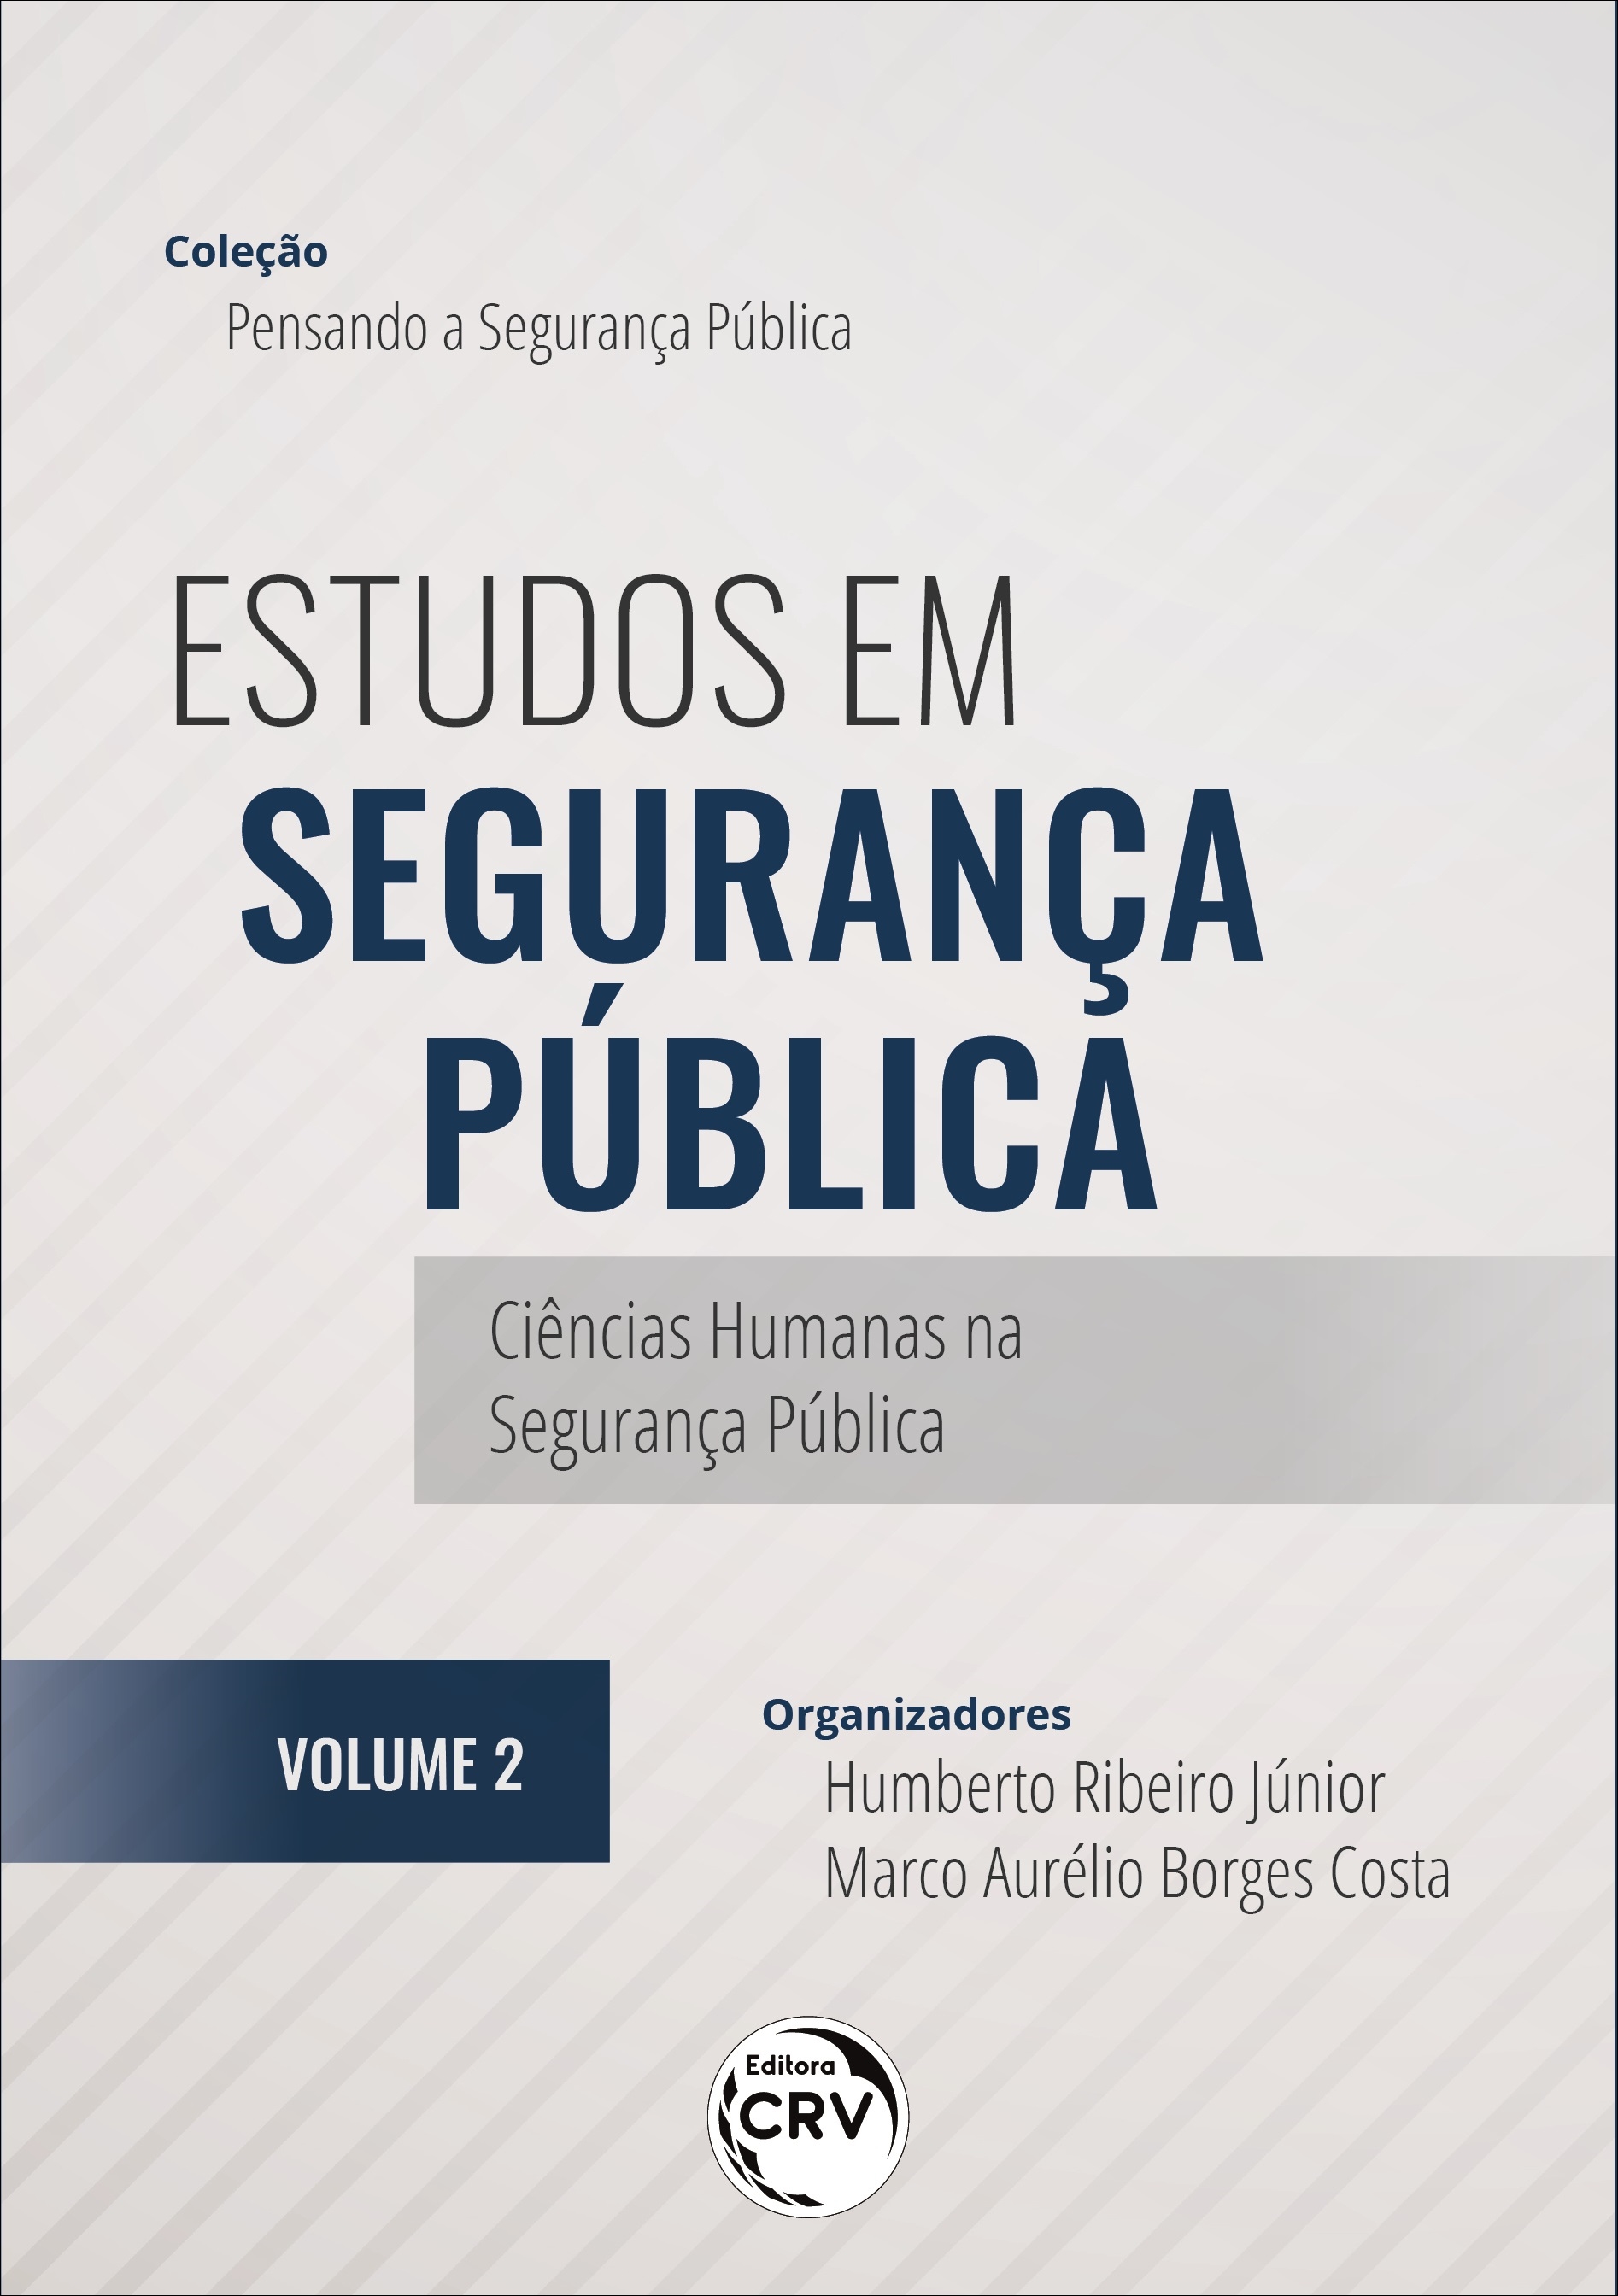 ESTUDOS EM SEGURANÇA PÚBLICA: <br>Ciências Humanas na Segurança Pública <br><br>Coleção Pensando a Segurança Pública <br> Volume 2